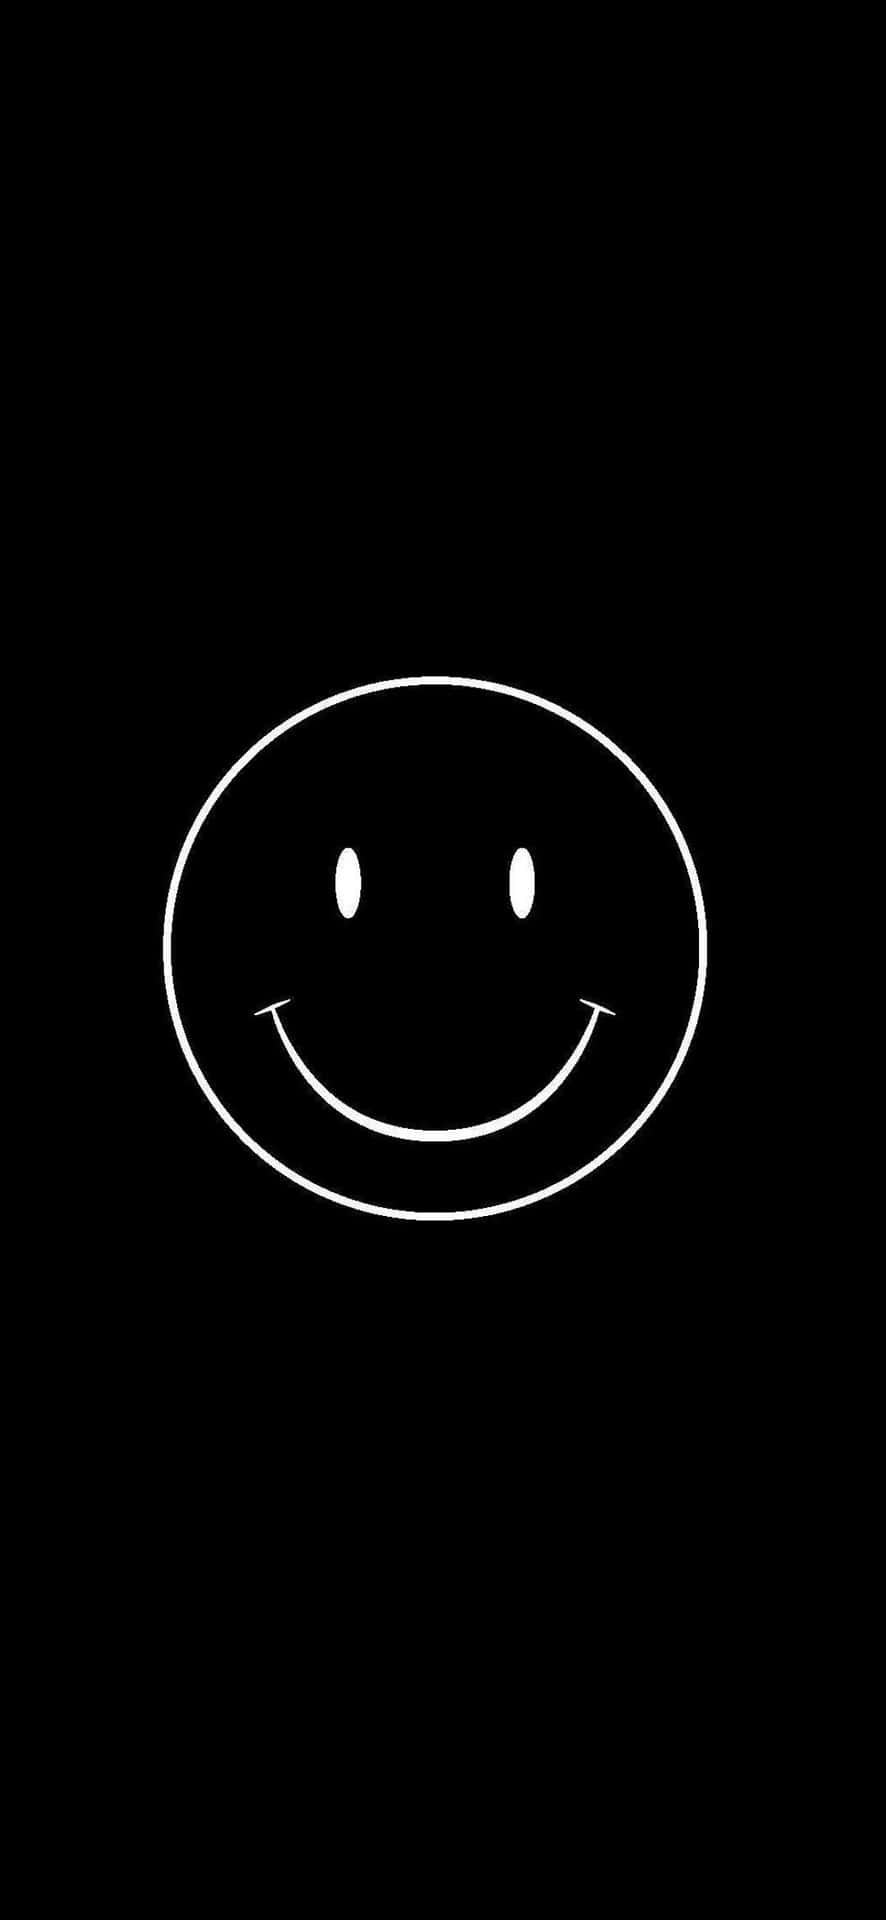 Smile Emoji Black White Drawing